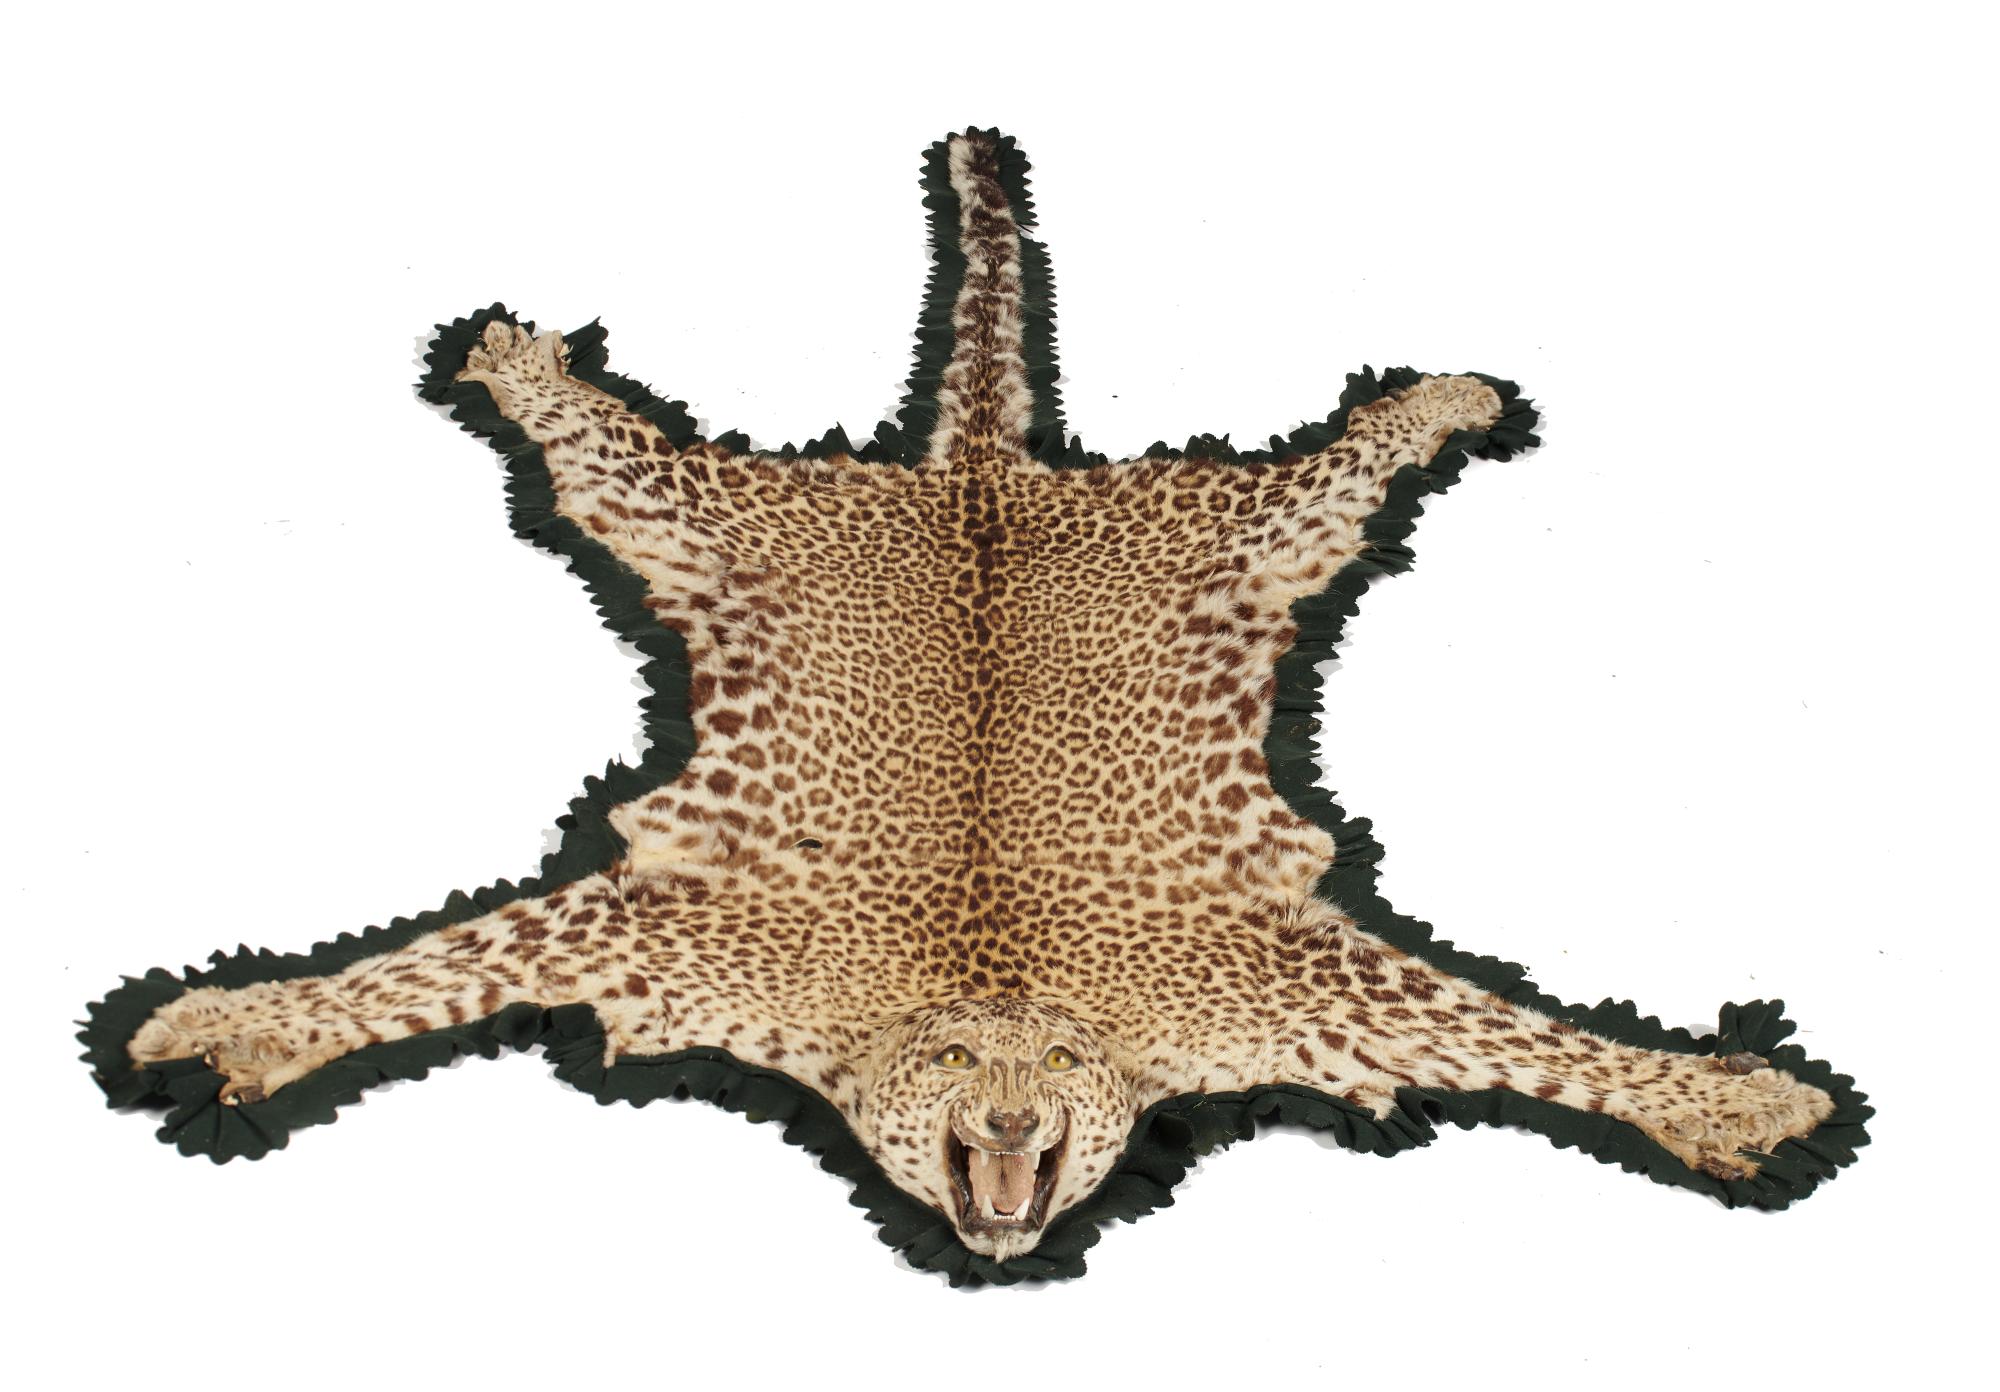 Taxidermy: A Rowland Ward leopard skin rug with trade label, circa 1900, 218cm by 145cm